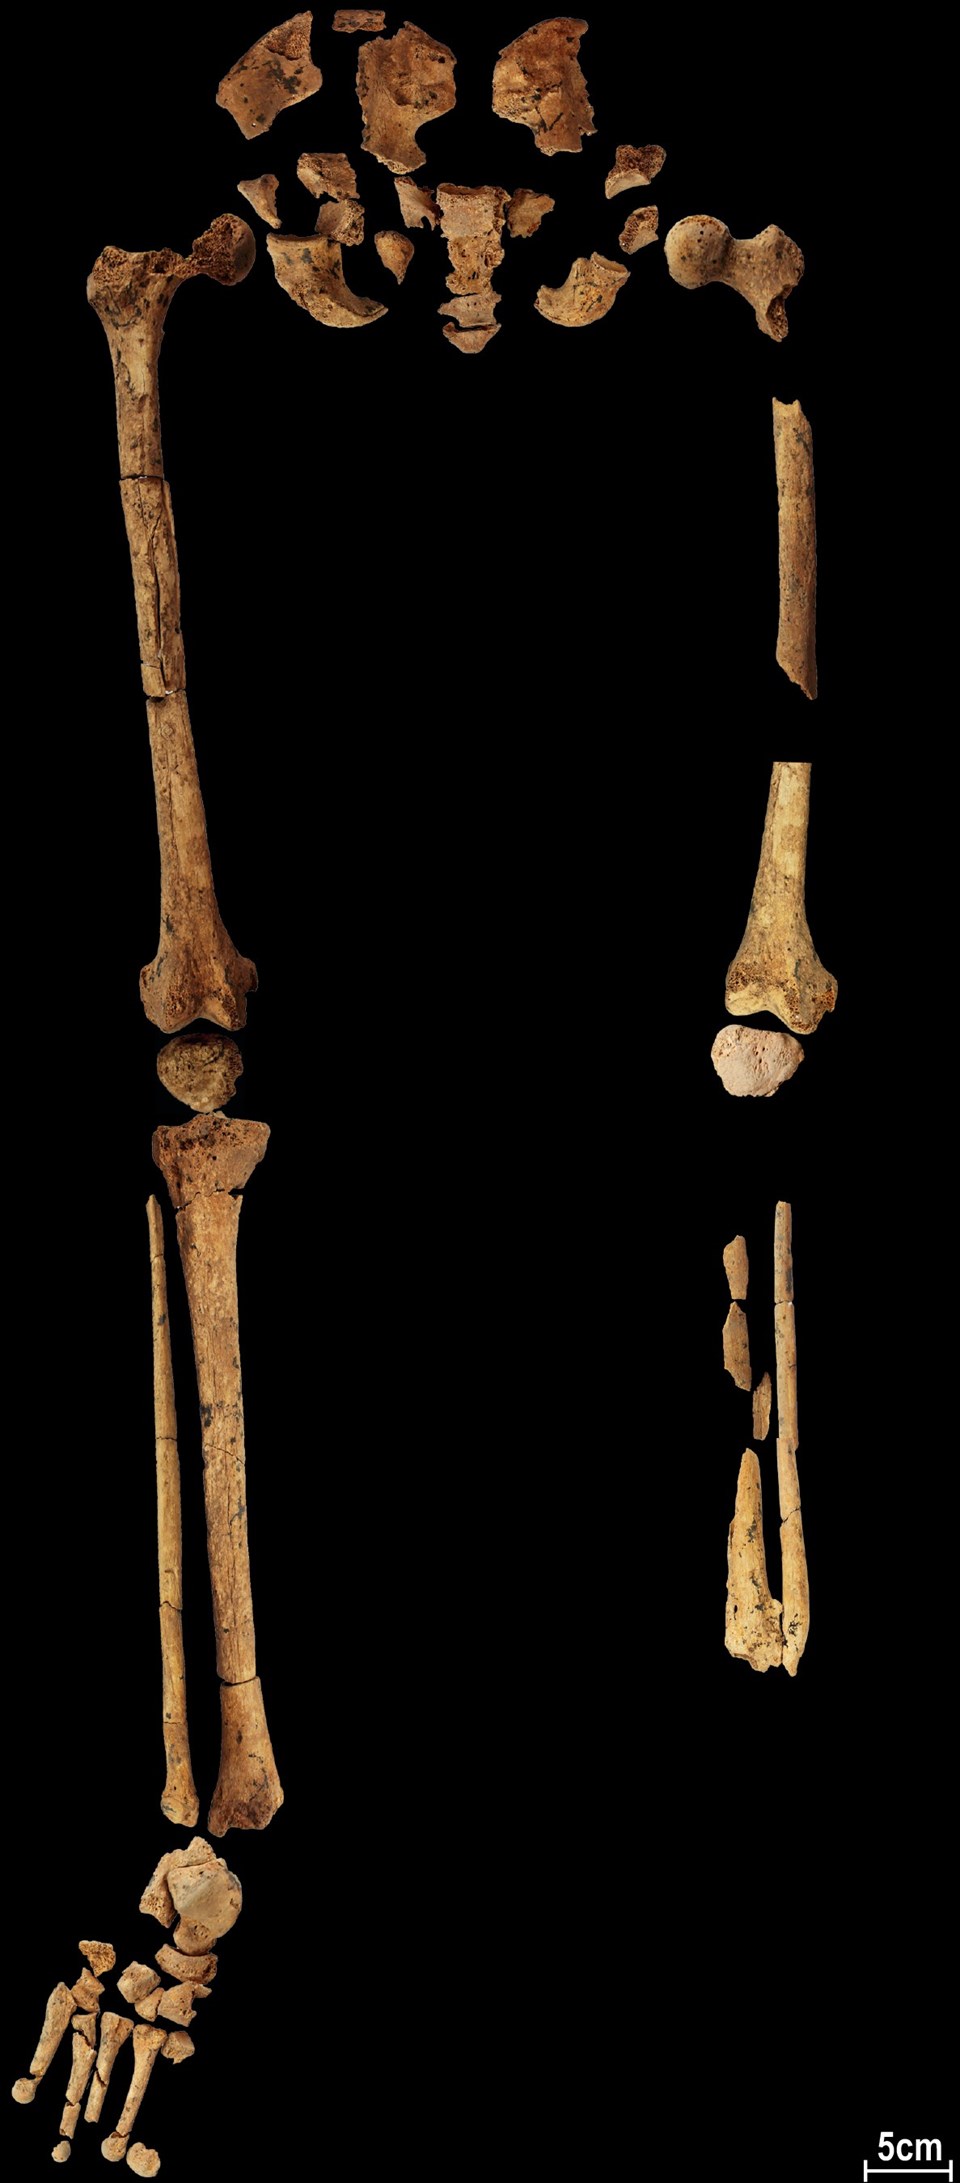 31 bin yıl öncesine ait iskelet, tarihin ilk amputasyonuna ışık tutuyor - 2